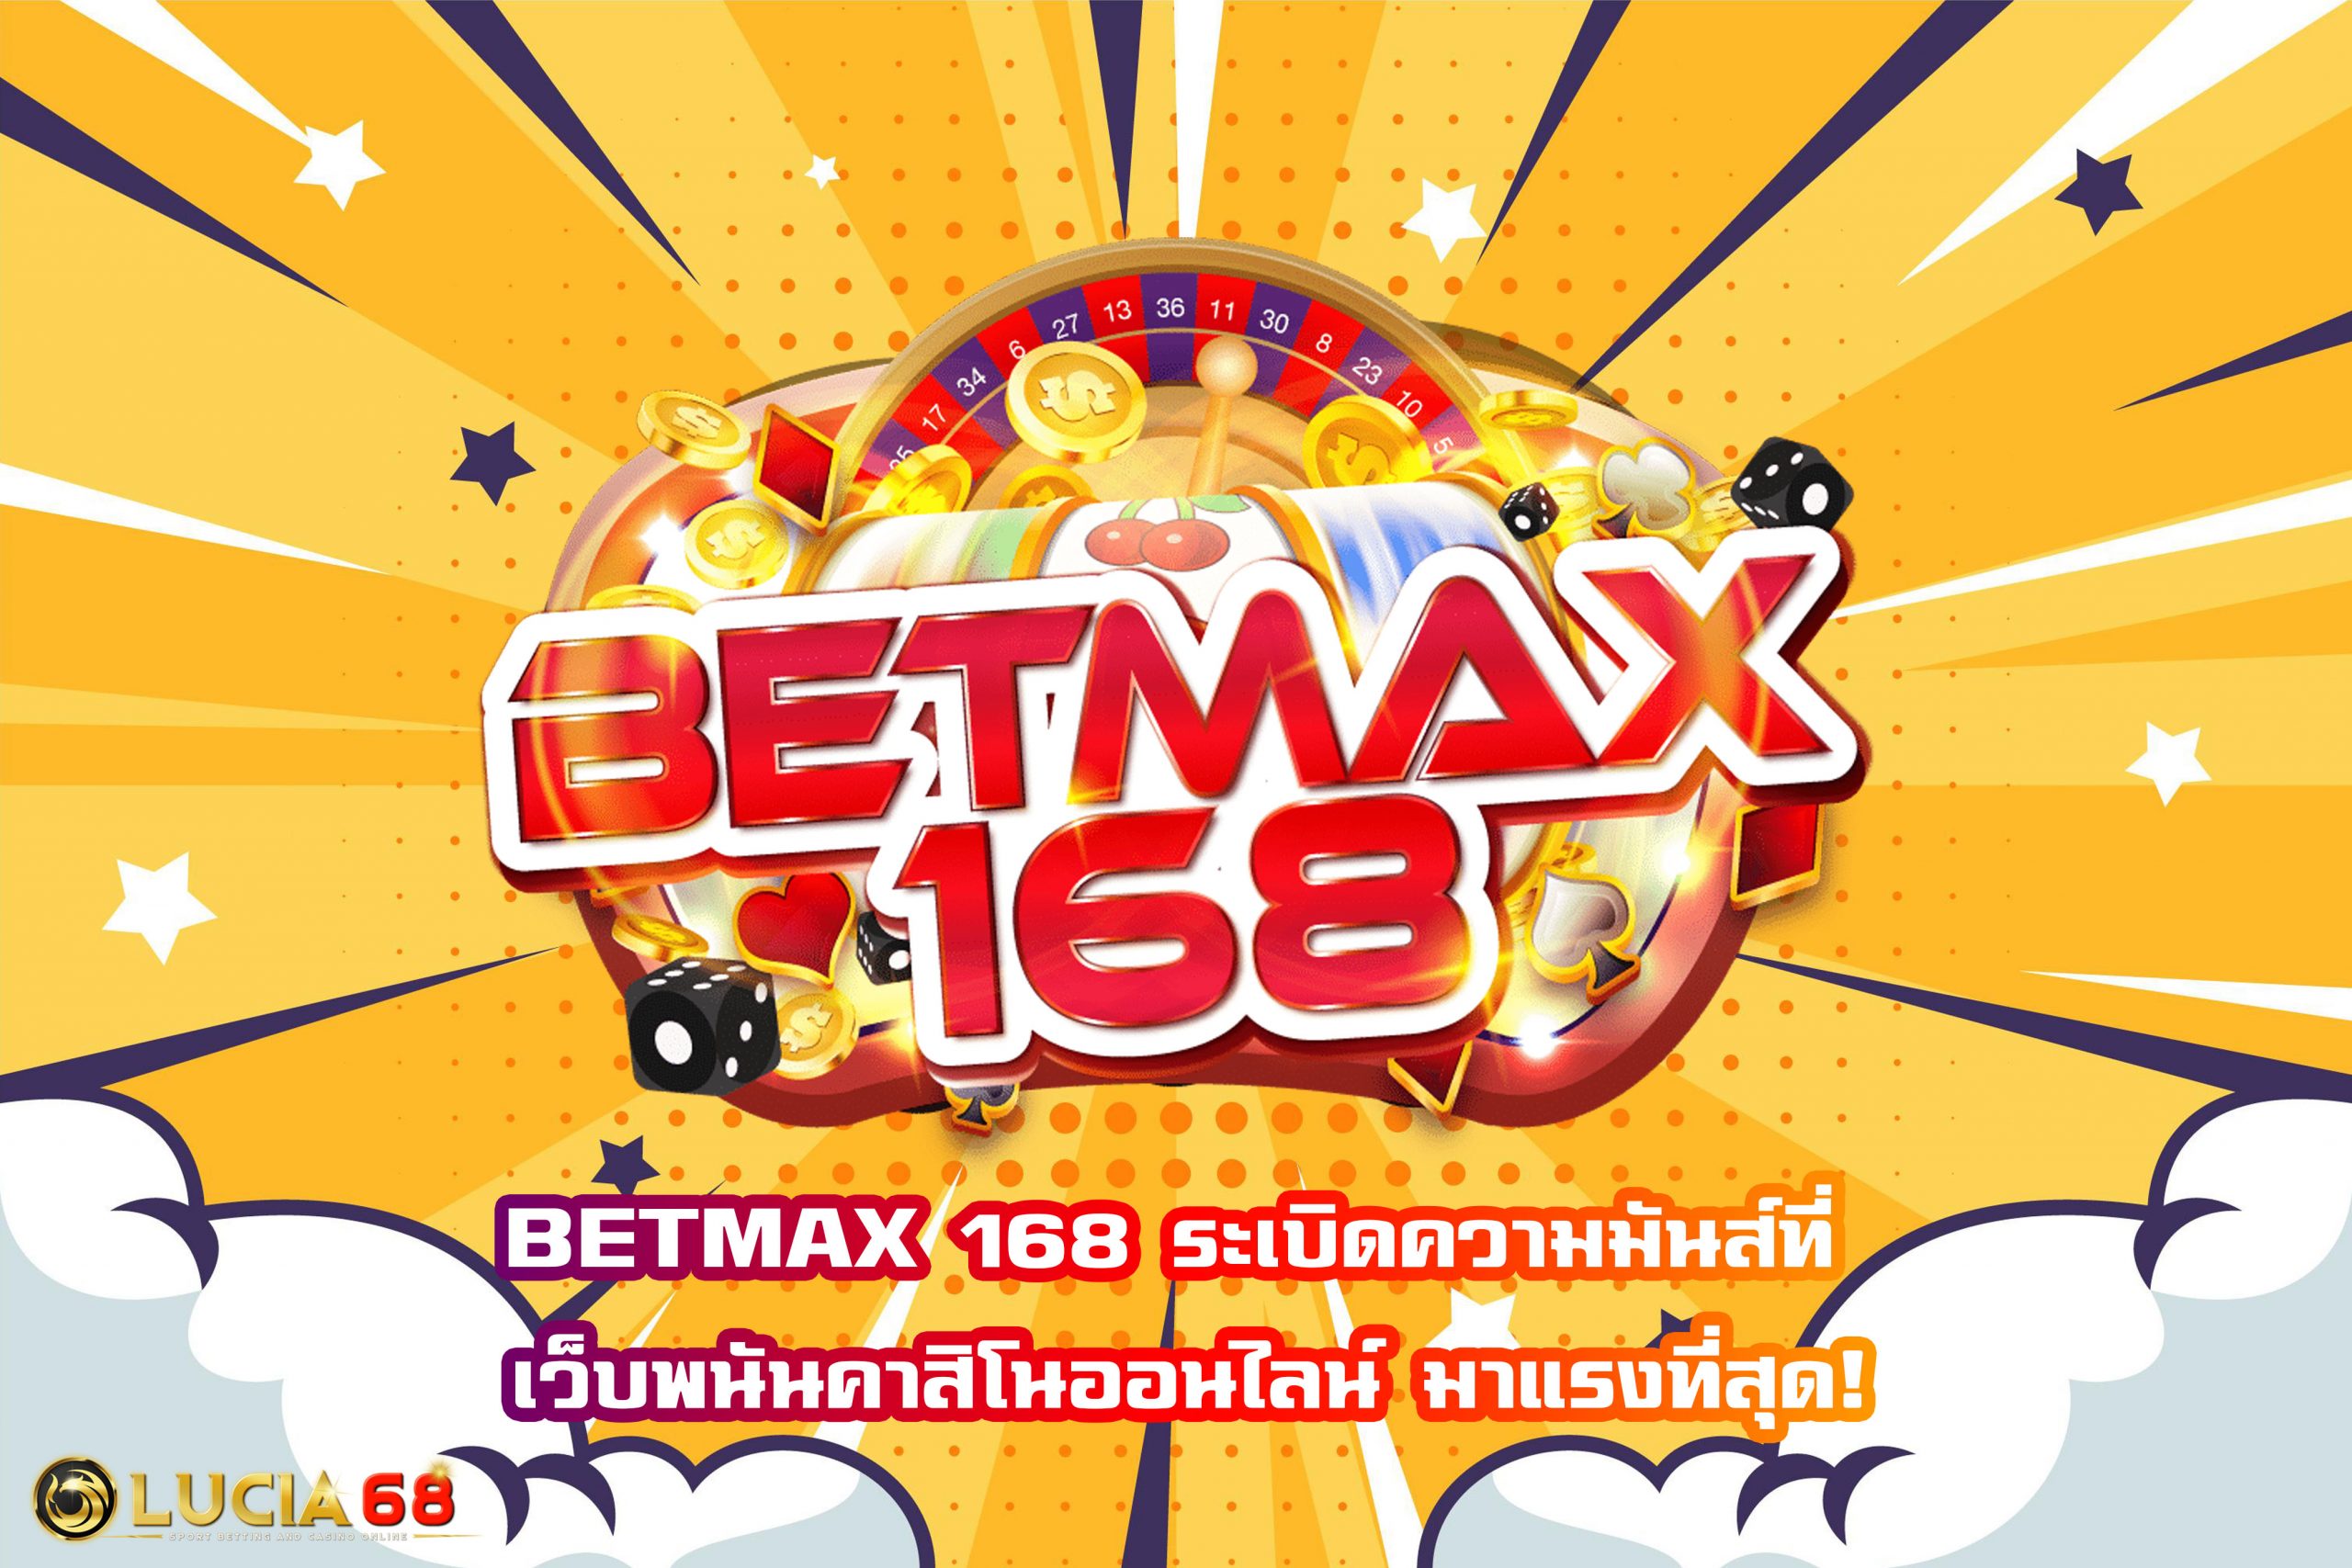 BETMAX 168 ระเบิดความมันส์ที่ เว็บพนันคาสิโนออนไลน์ มาแรงที่สุด!